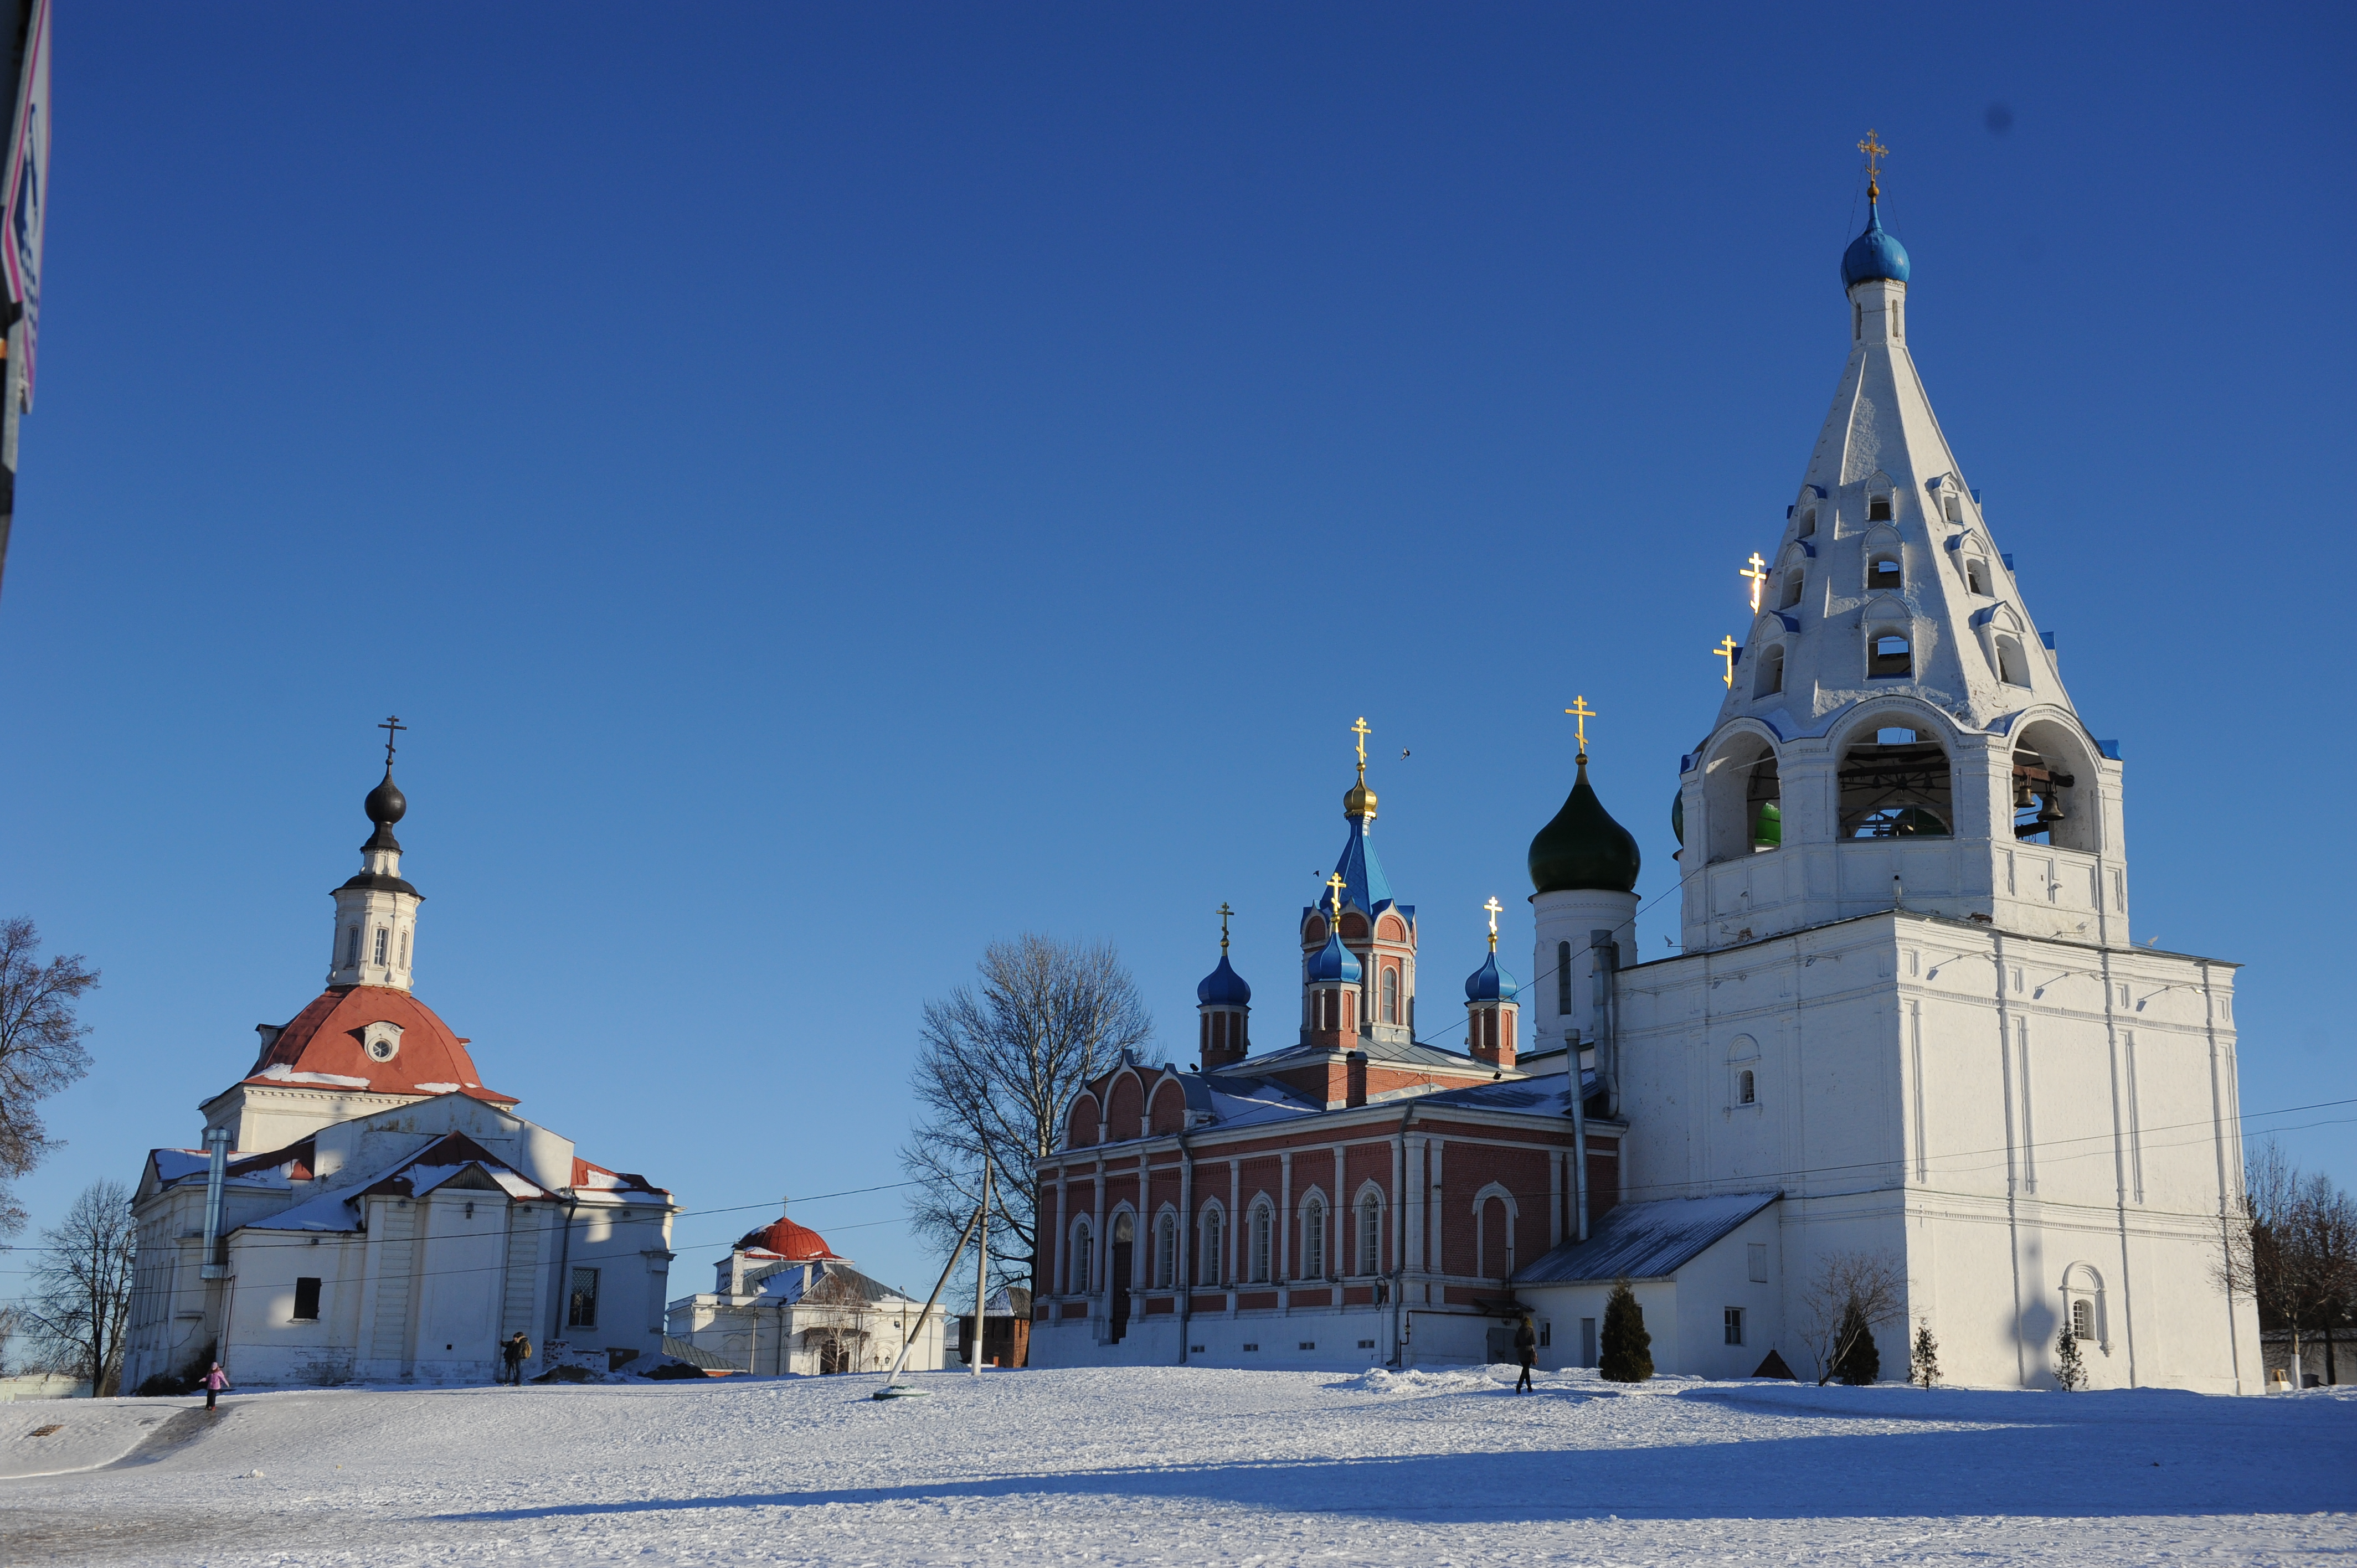 Московская область заняла первое место в Национальном туристическом рейтинге за 2020 год